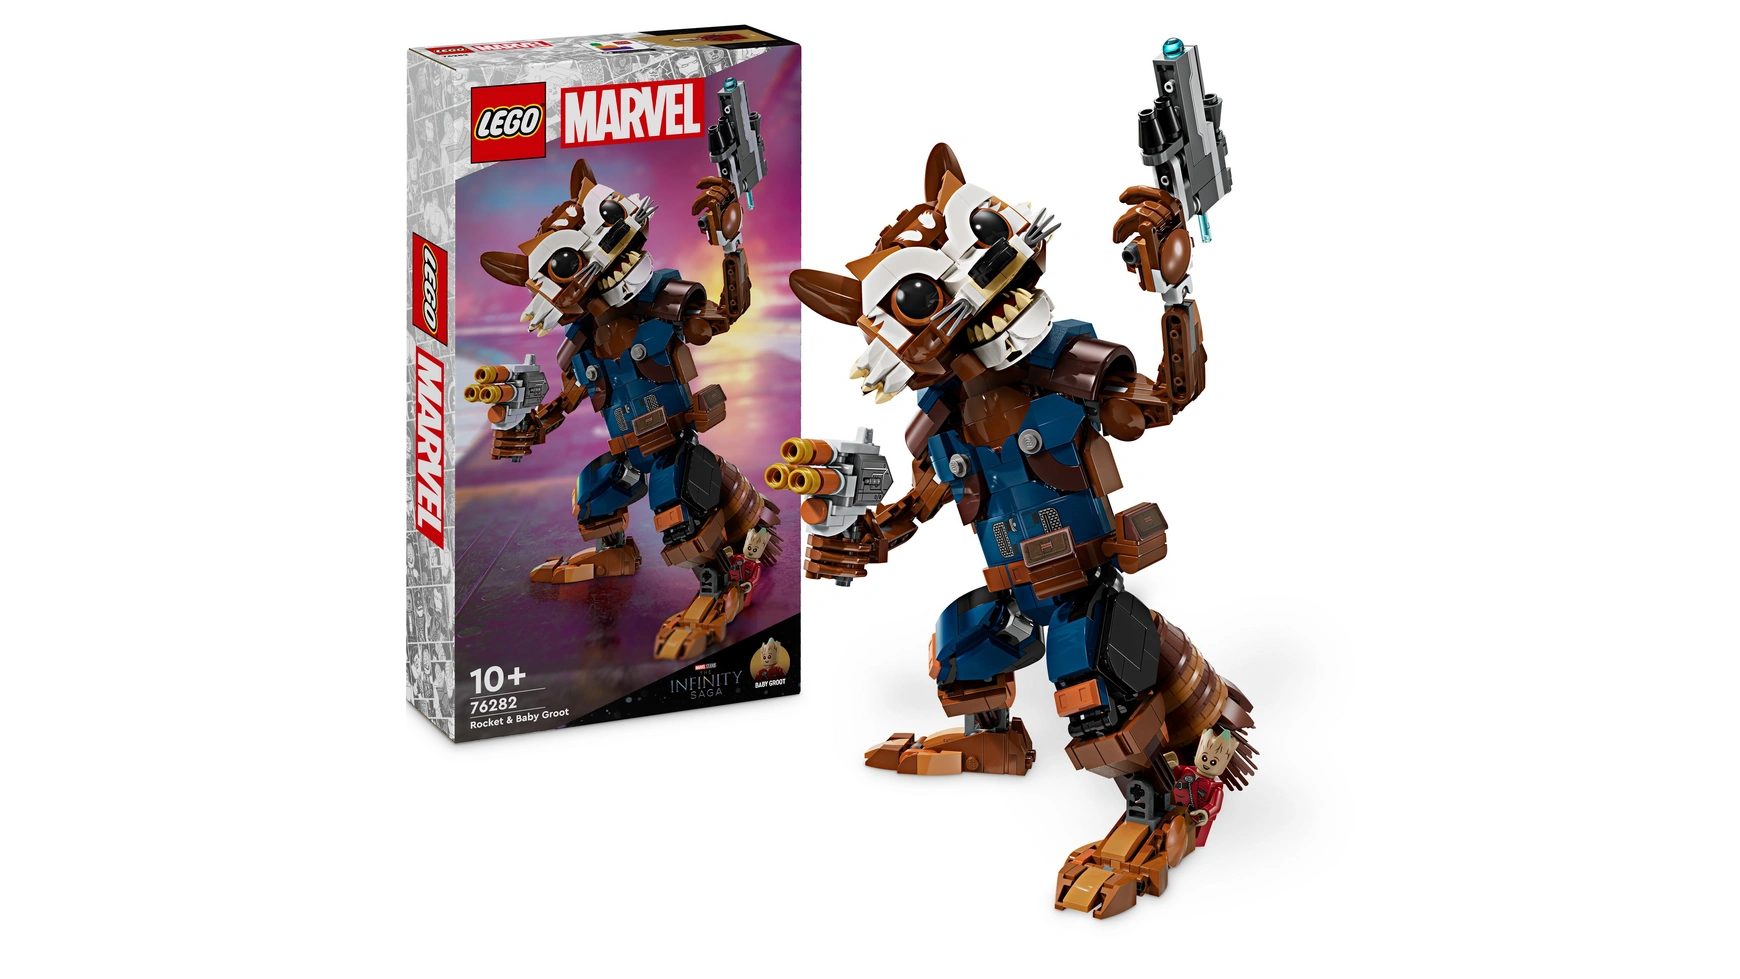 Lego Marvel Ракета и малыш Грут, сборная игрушка-супергерой приор групп сумка шоппер грут и ракета – 3 хлопок 60%